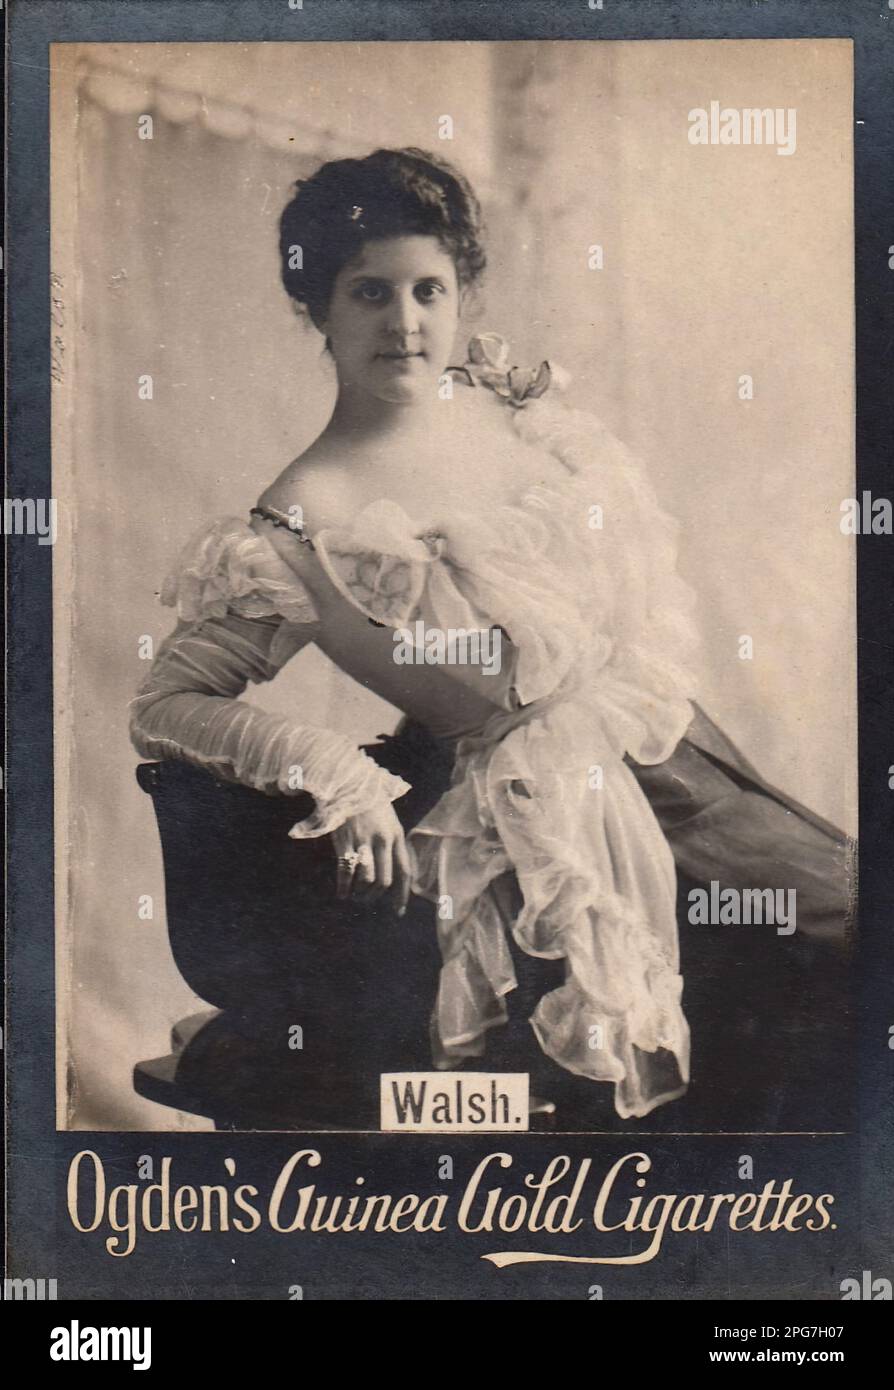 Porträt der Schauspielerin Walsh - Vintage Cigarette Card, Viktorianische Ära Stockfoto